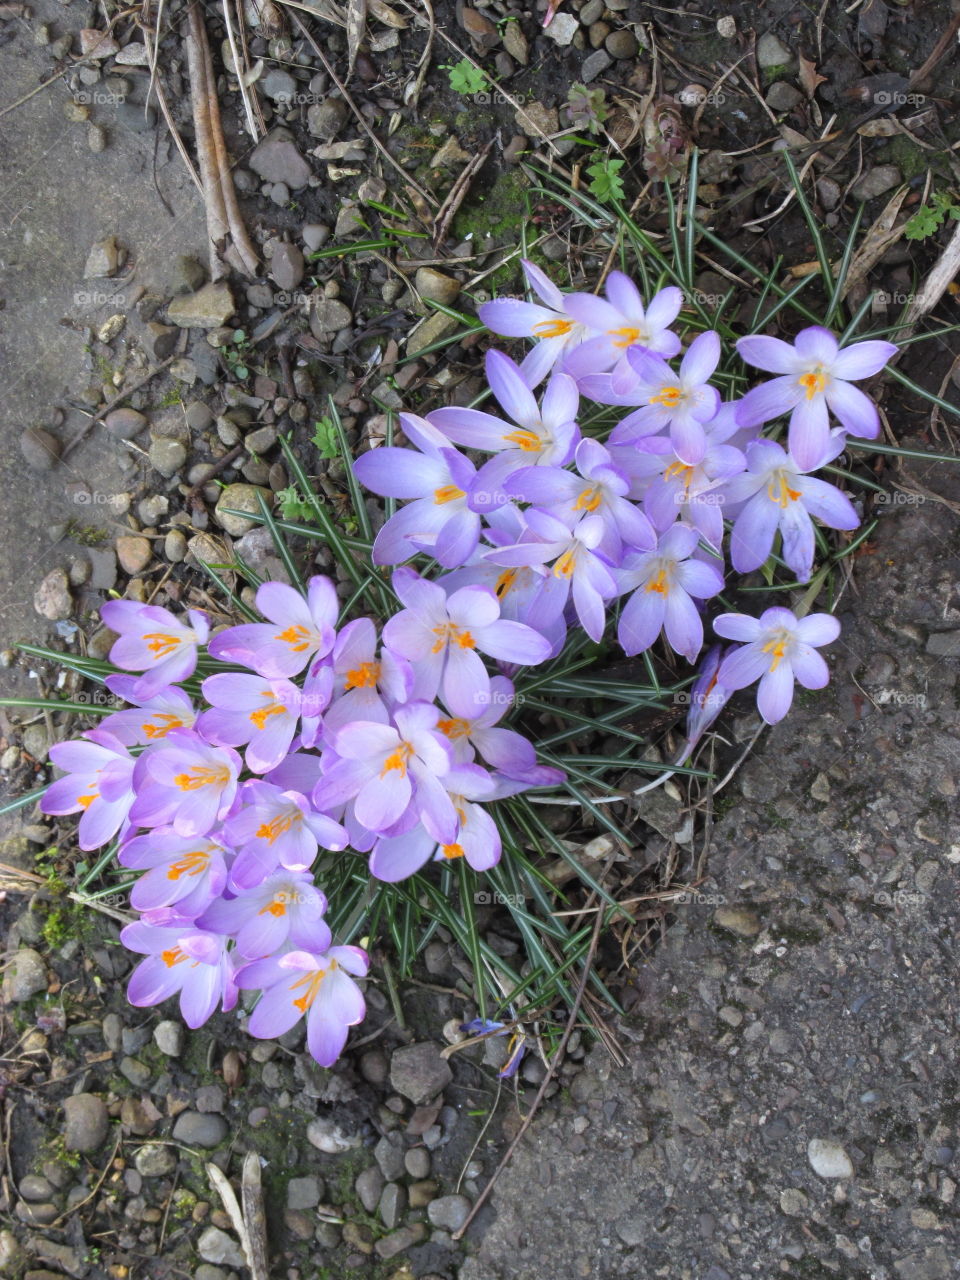 Purple crocus - early flowering bulb